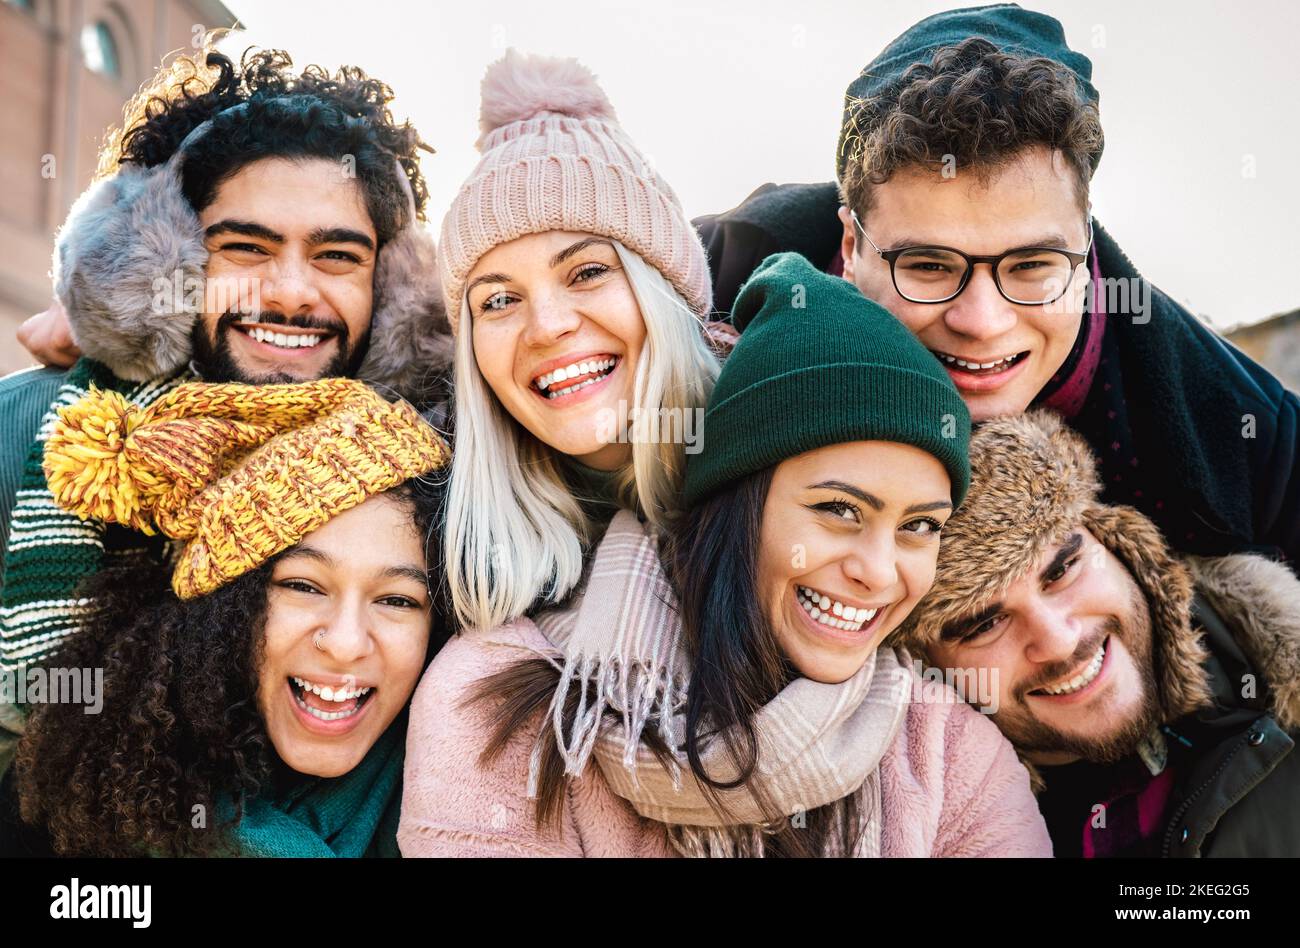 Des hommes et des filles du monde entier prennent un selfie drôle sur des vêtements chauds de mode - concept de style de vie heureux avec des gens millenial s'amusant ensemble Banque D'Images